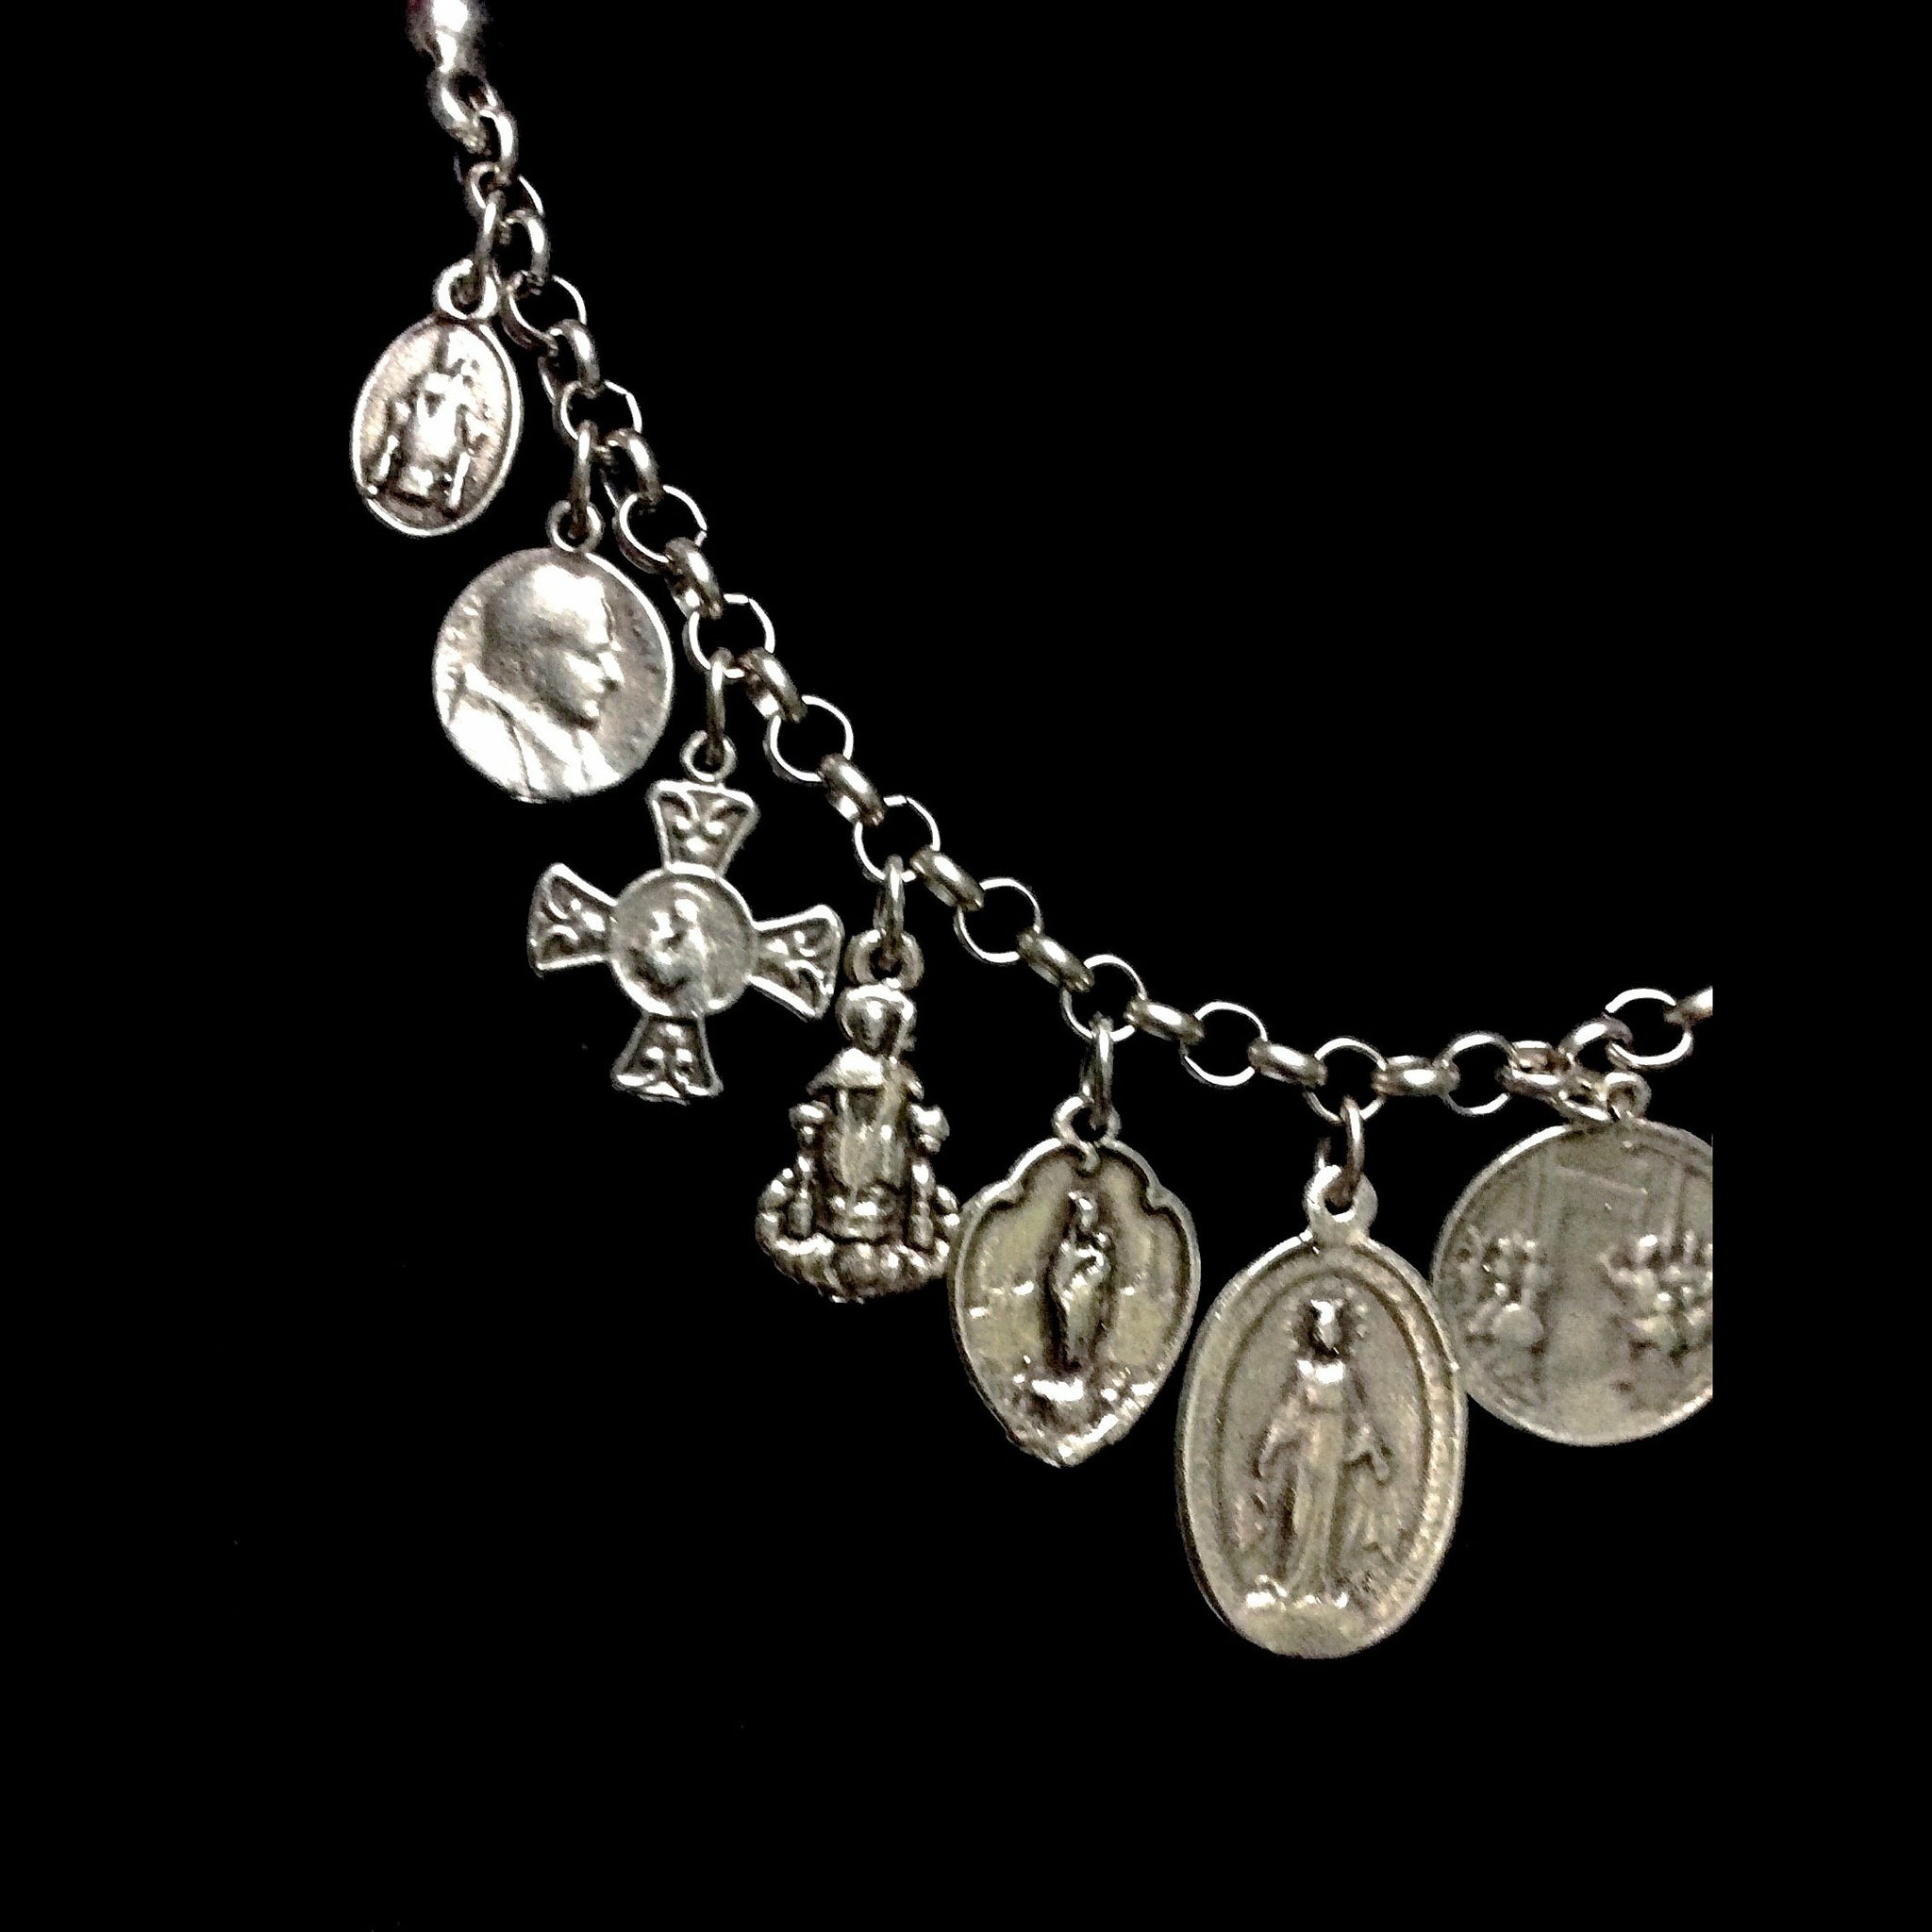 Heaven Sent Large Holy Medal Pearl Bracelet - The National Shrine